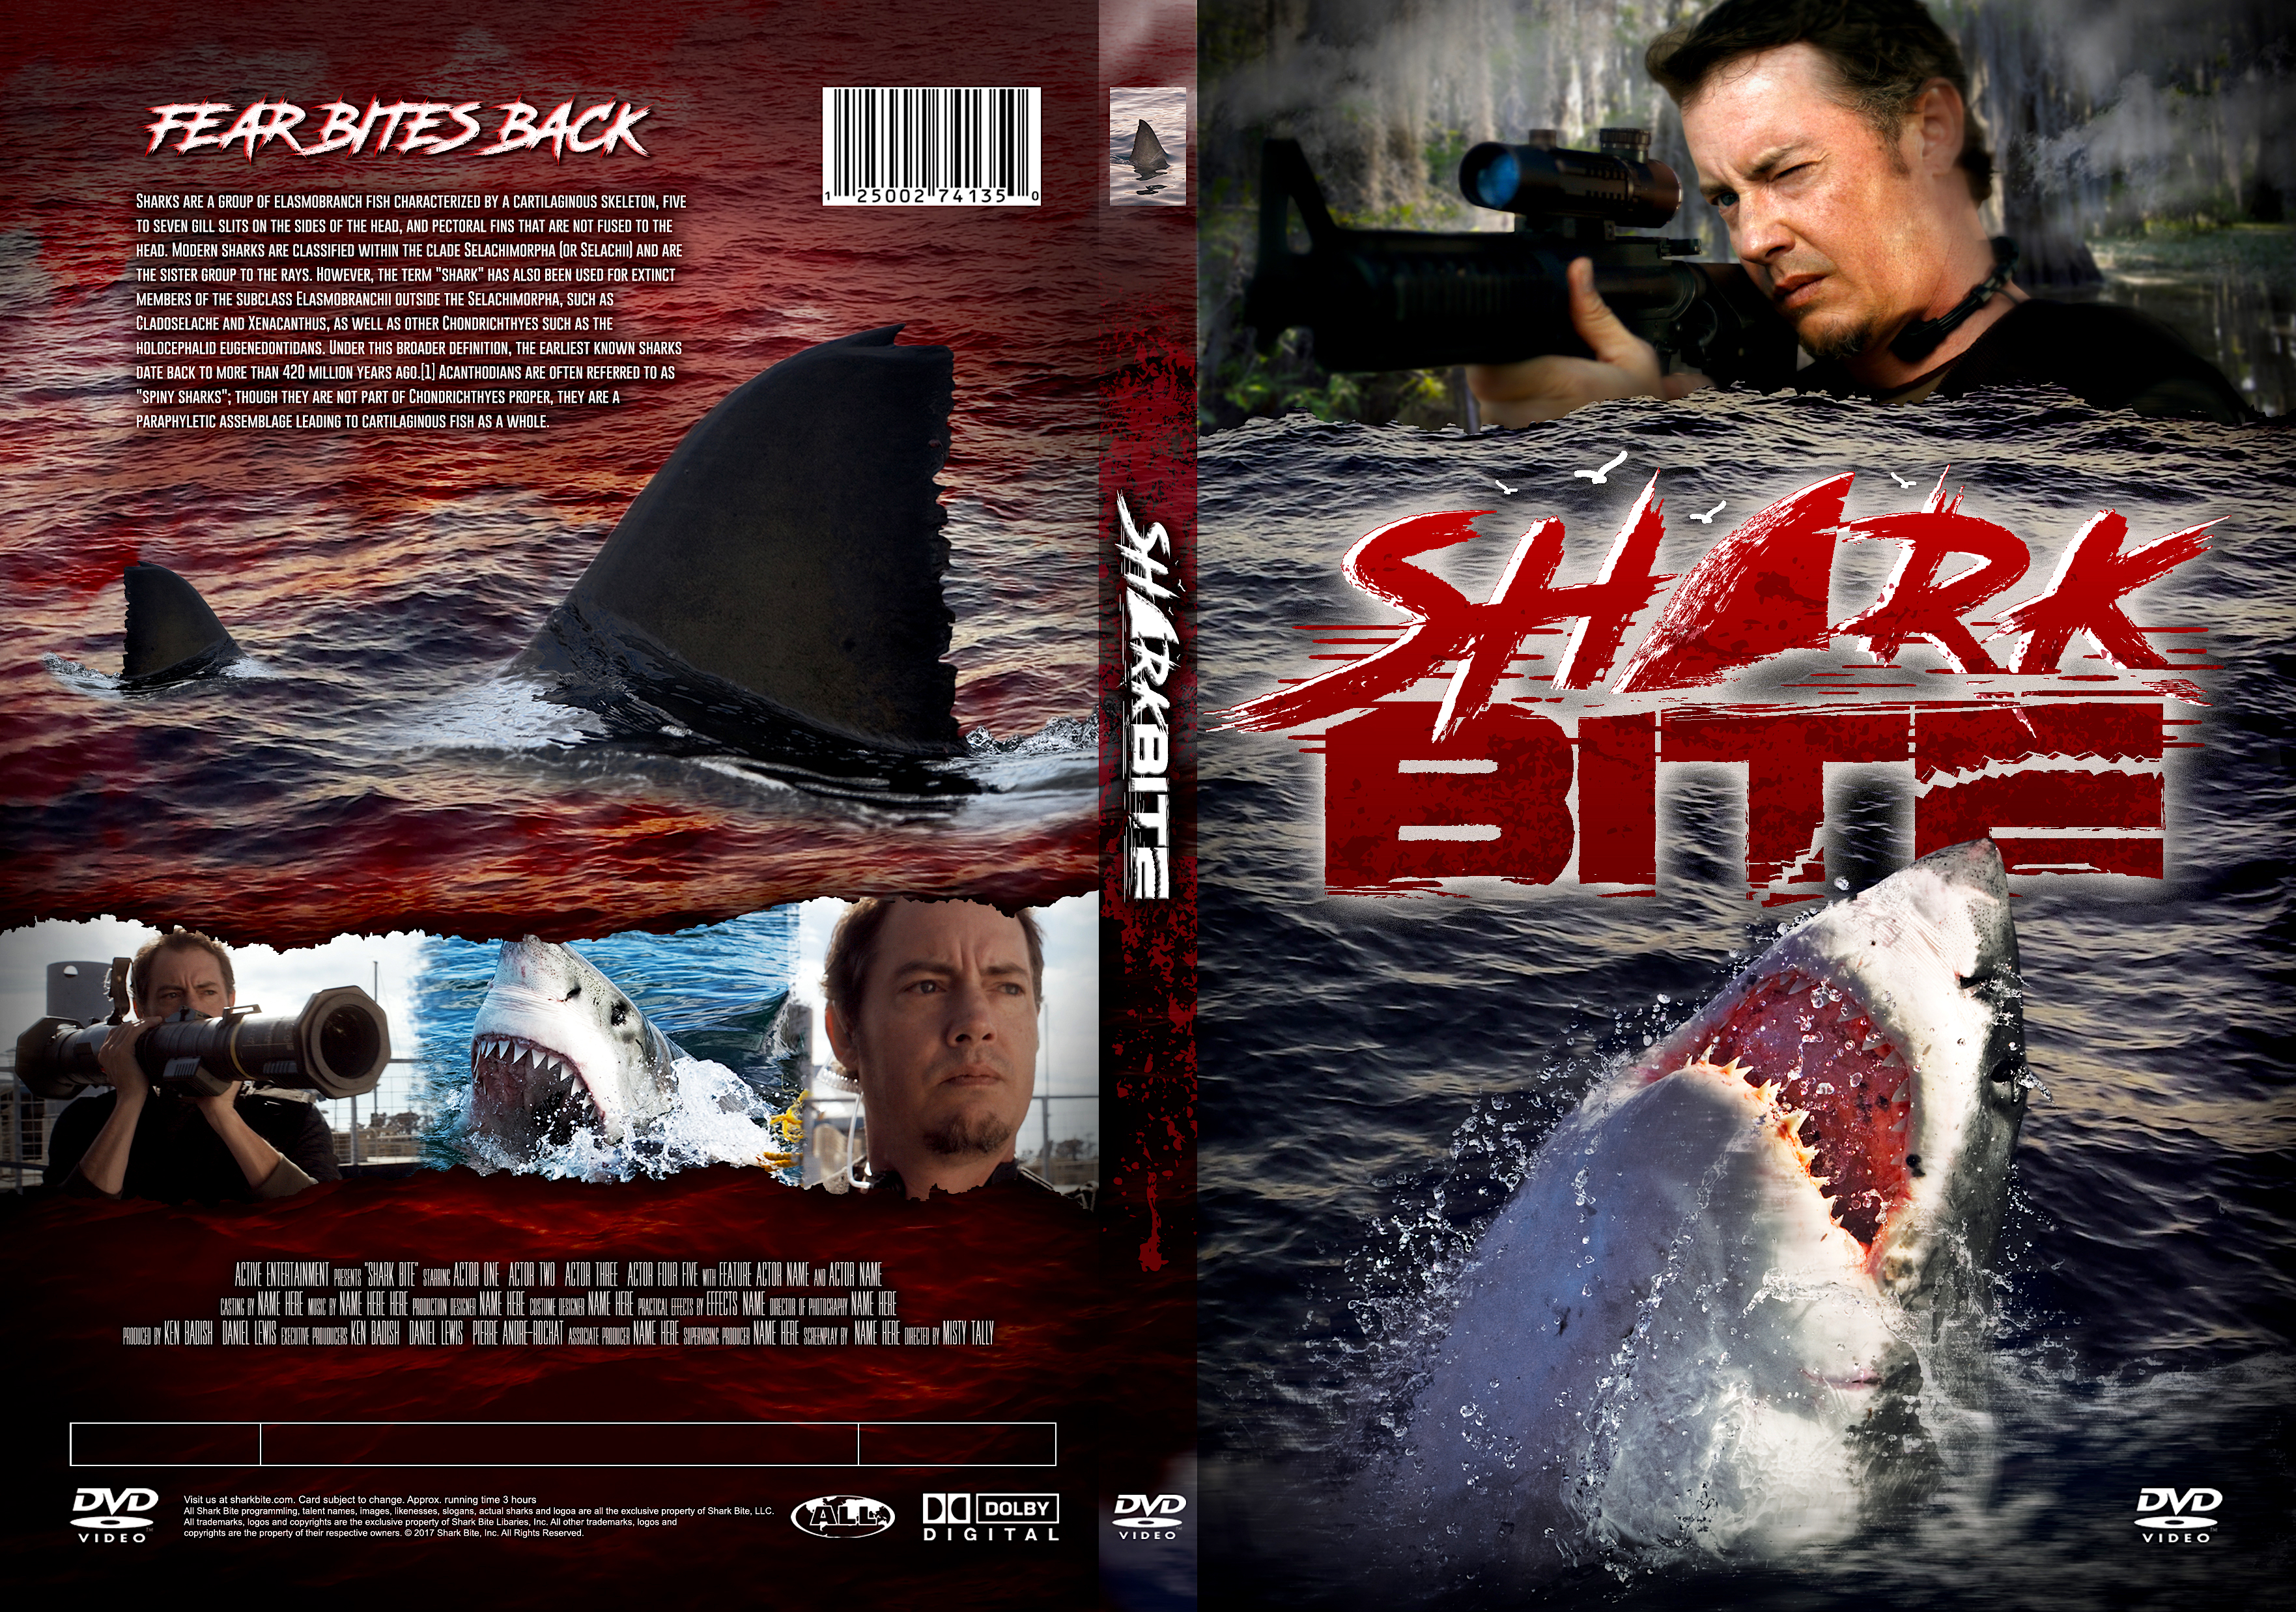 Shark Bite Logo & DVD Case Design by Blake Breaux on Dribbble